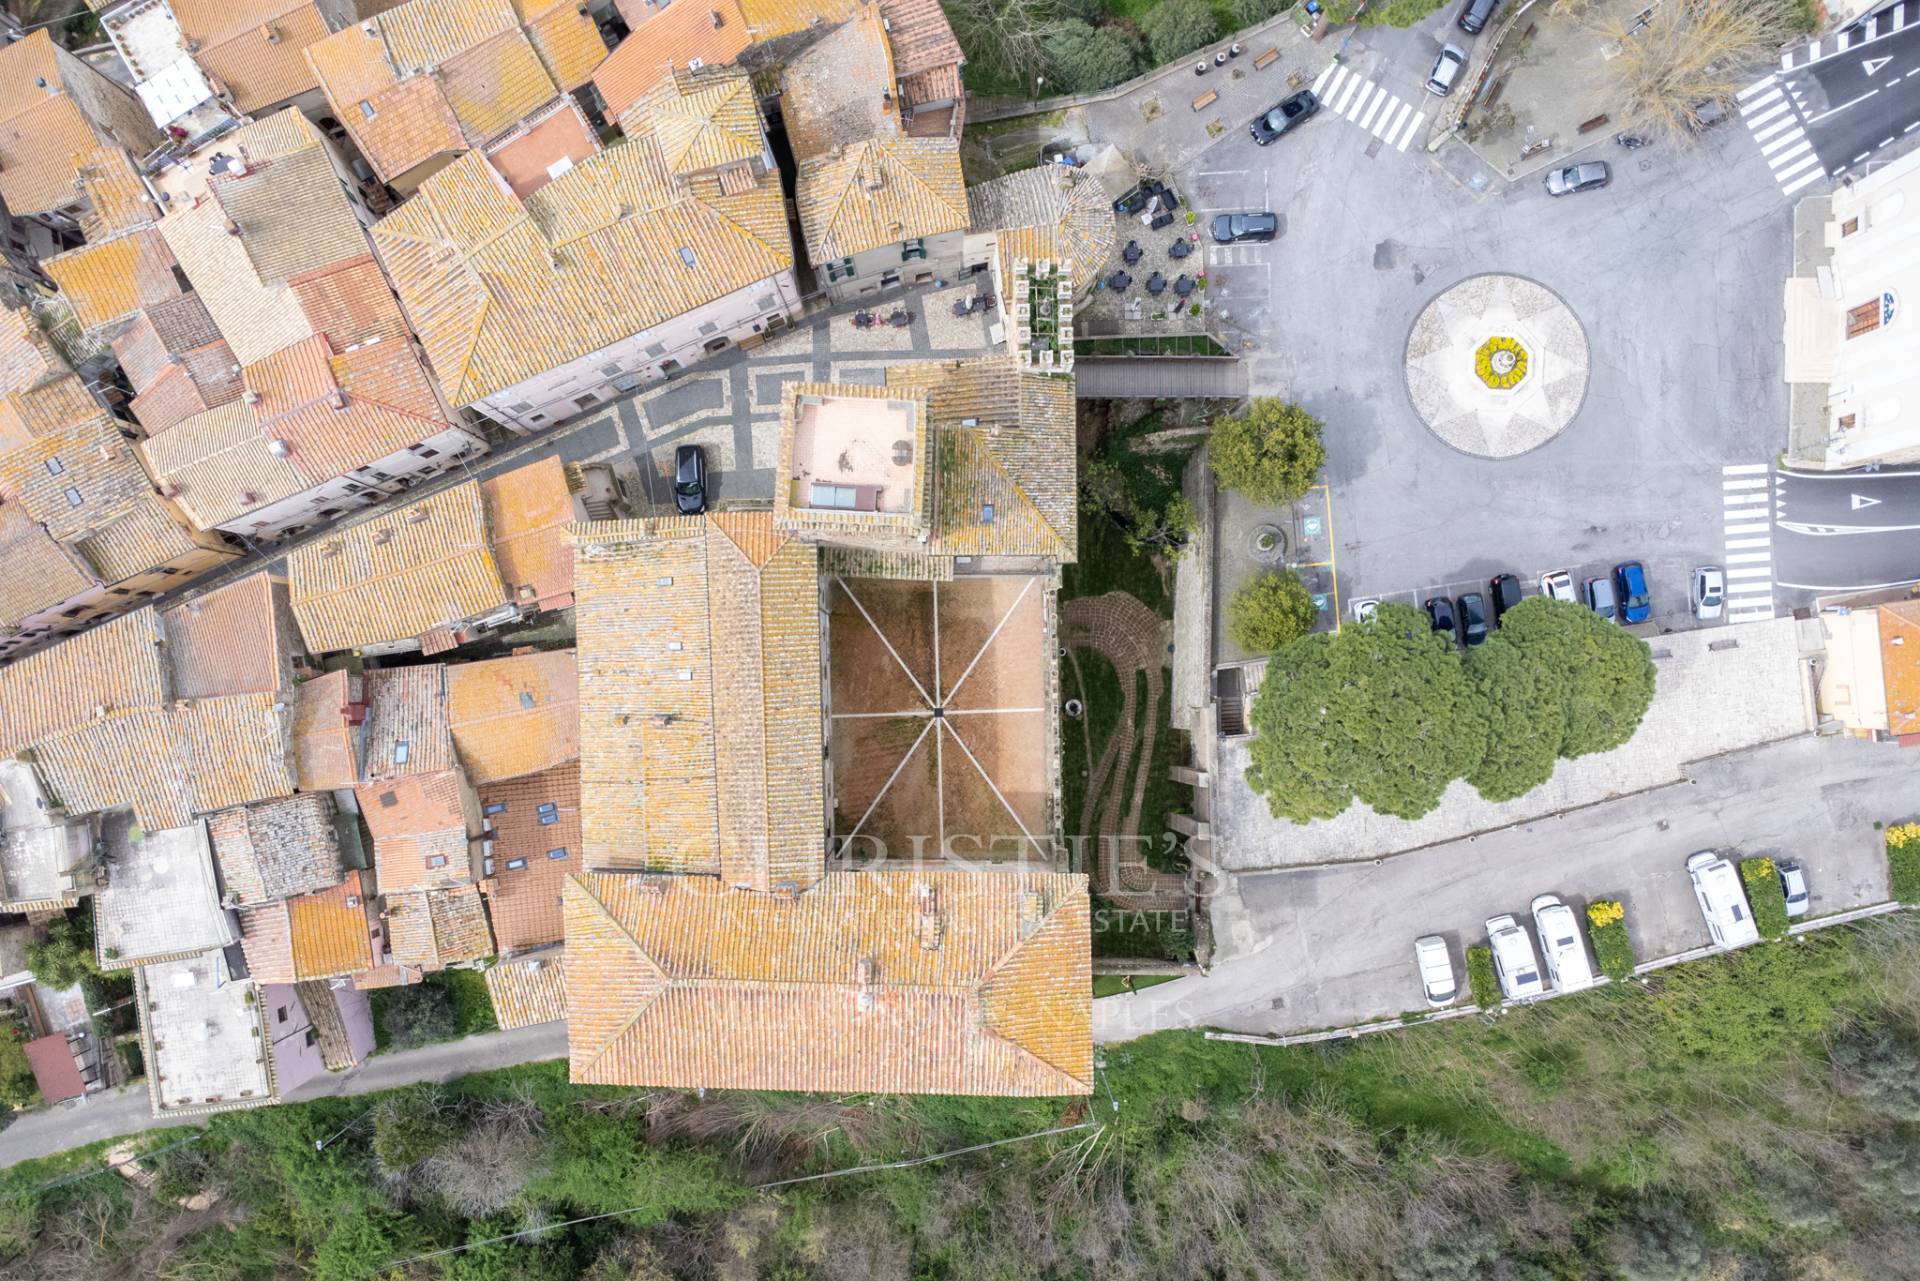 picture of Orsini's Castel Of Stimigliano - Rieti